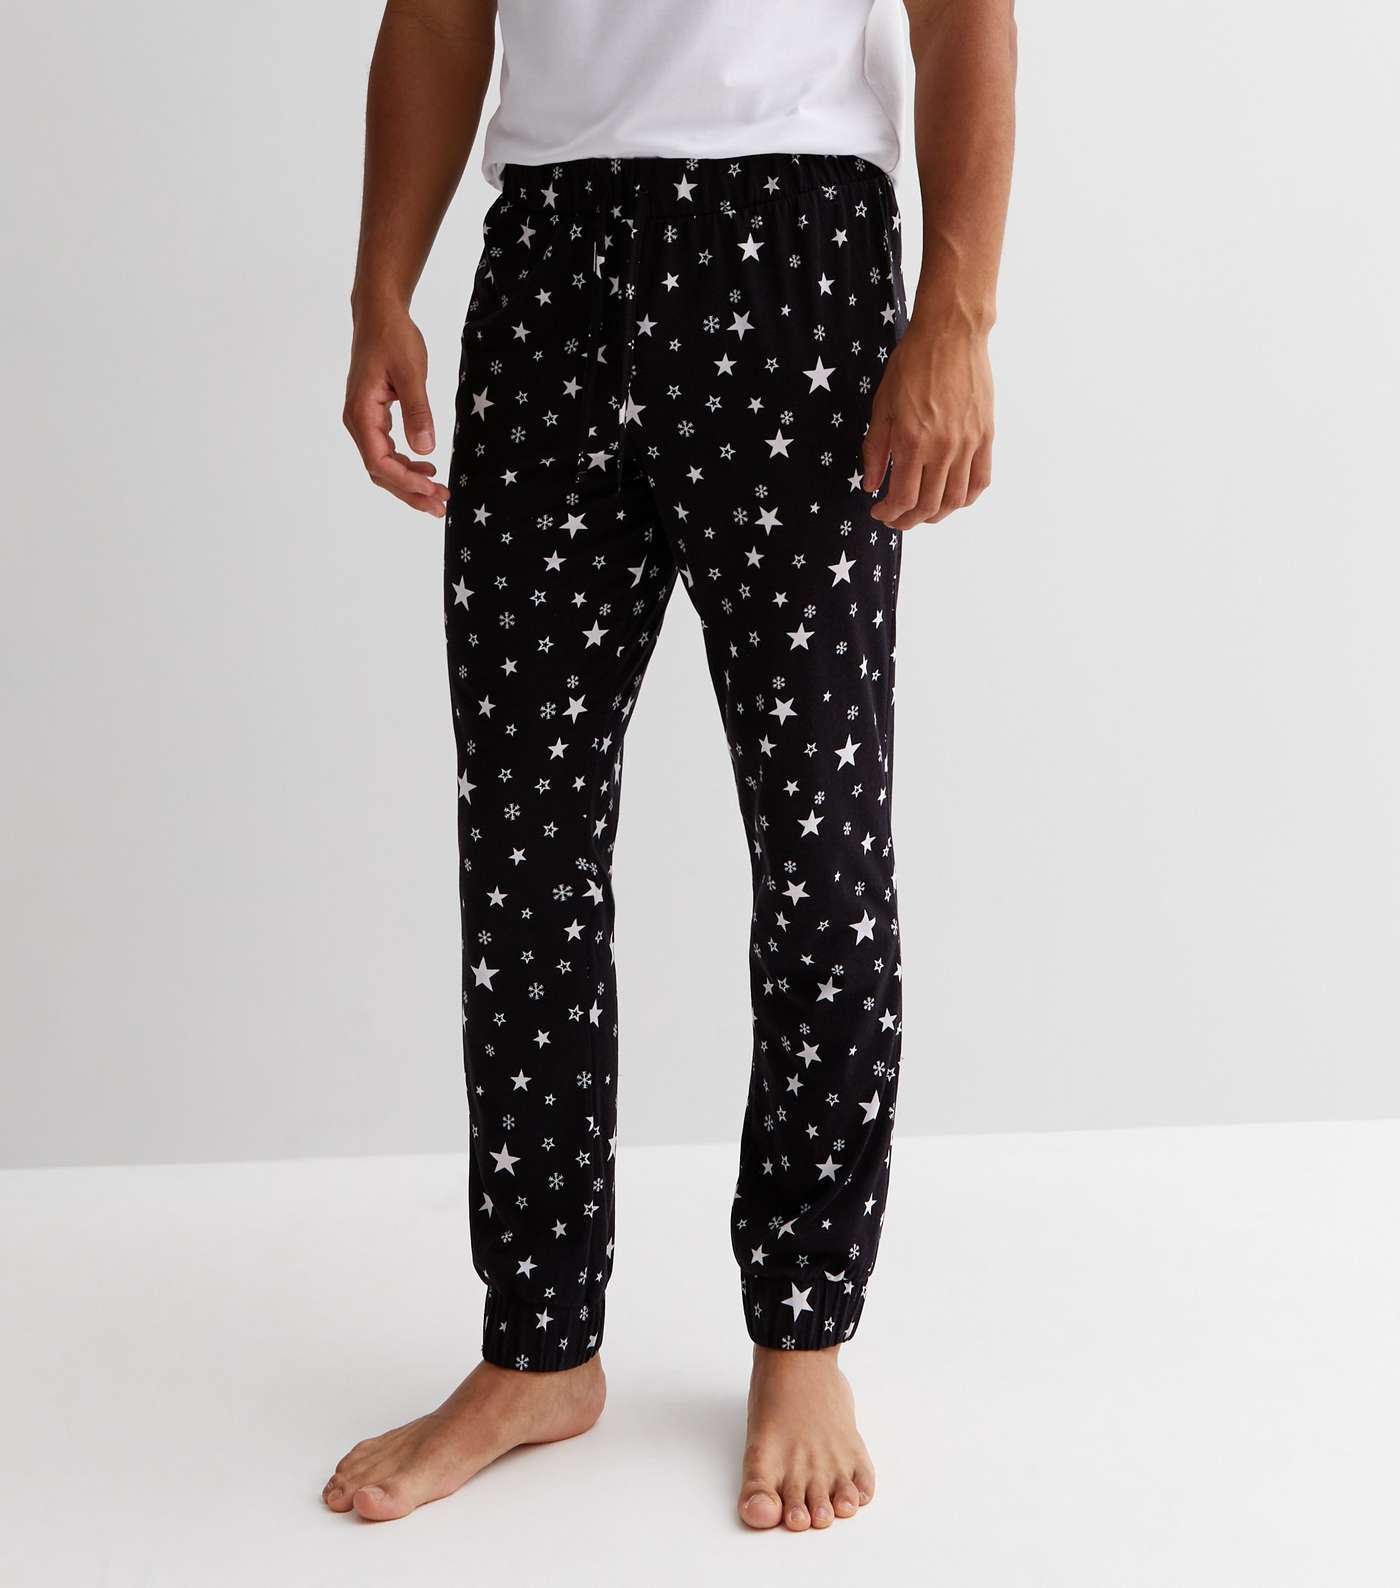 Black Family Christmas Jogger Pyjama Set with Star Print Image 4